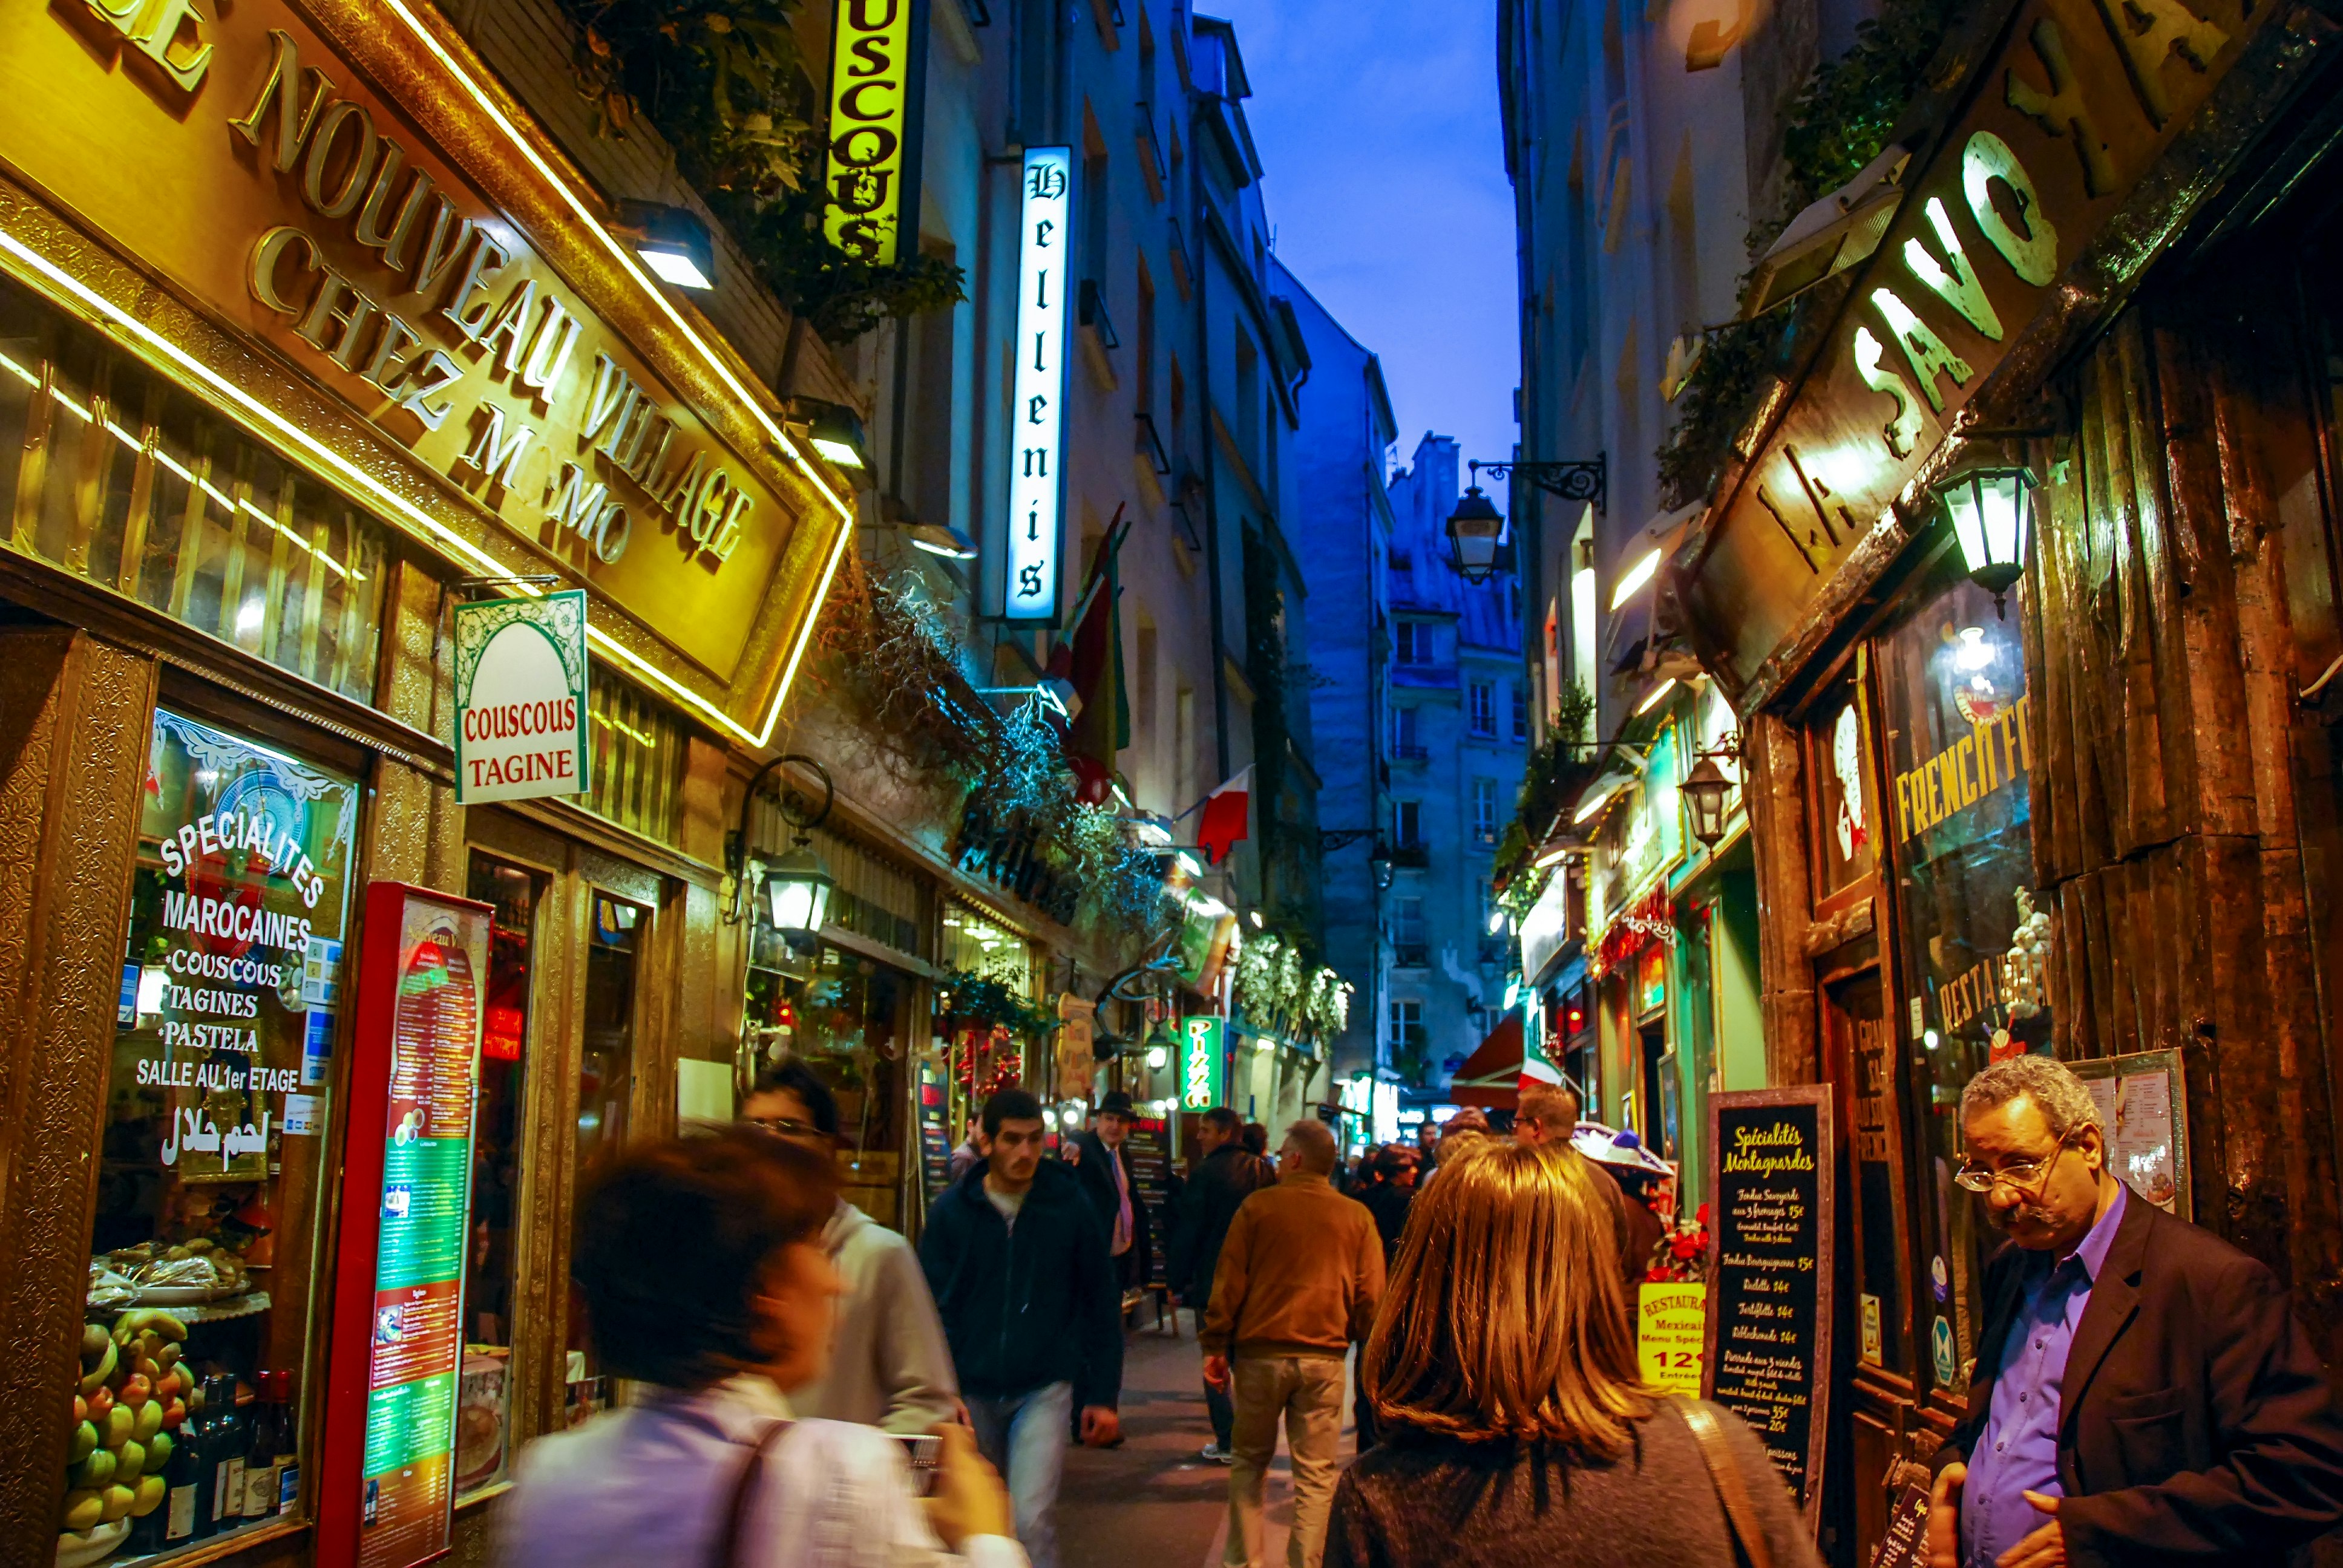 En livlig gata i Paris Quartier Latin på natten, med barer och restauranger längs gatan upplyst